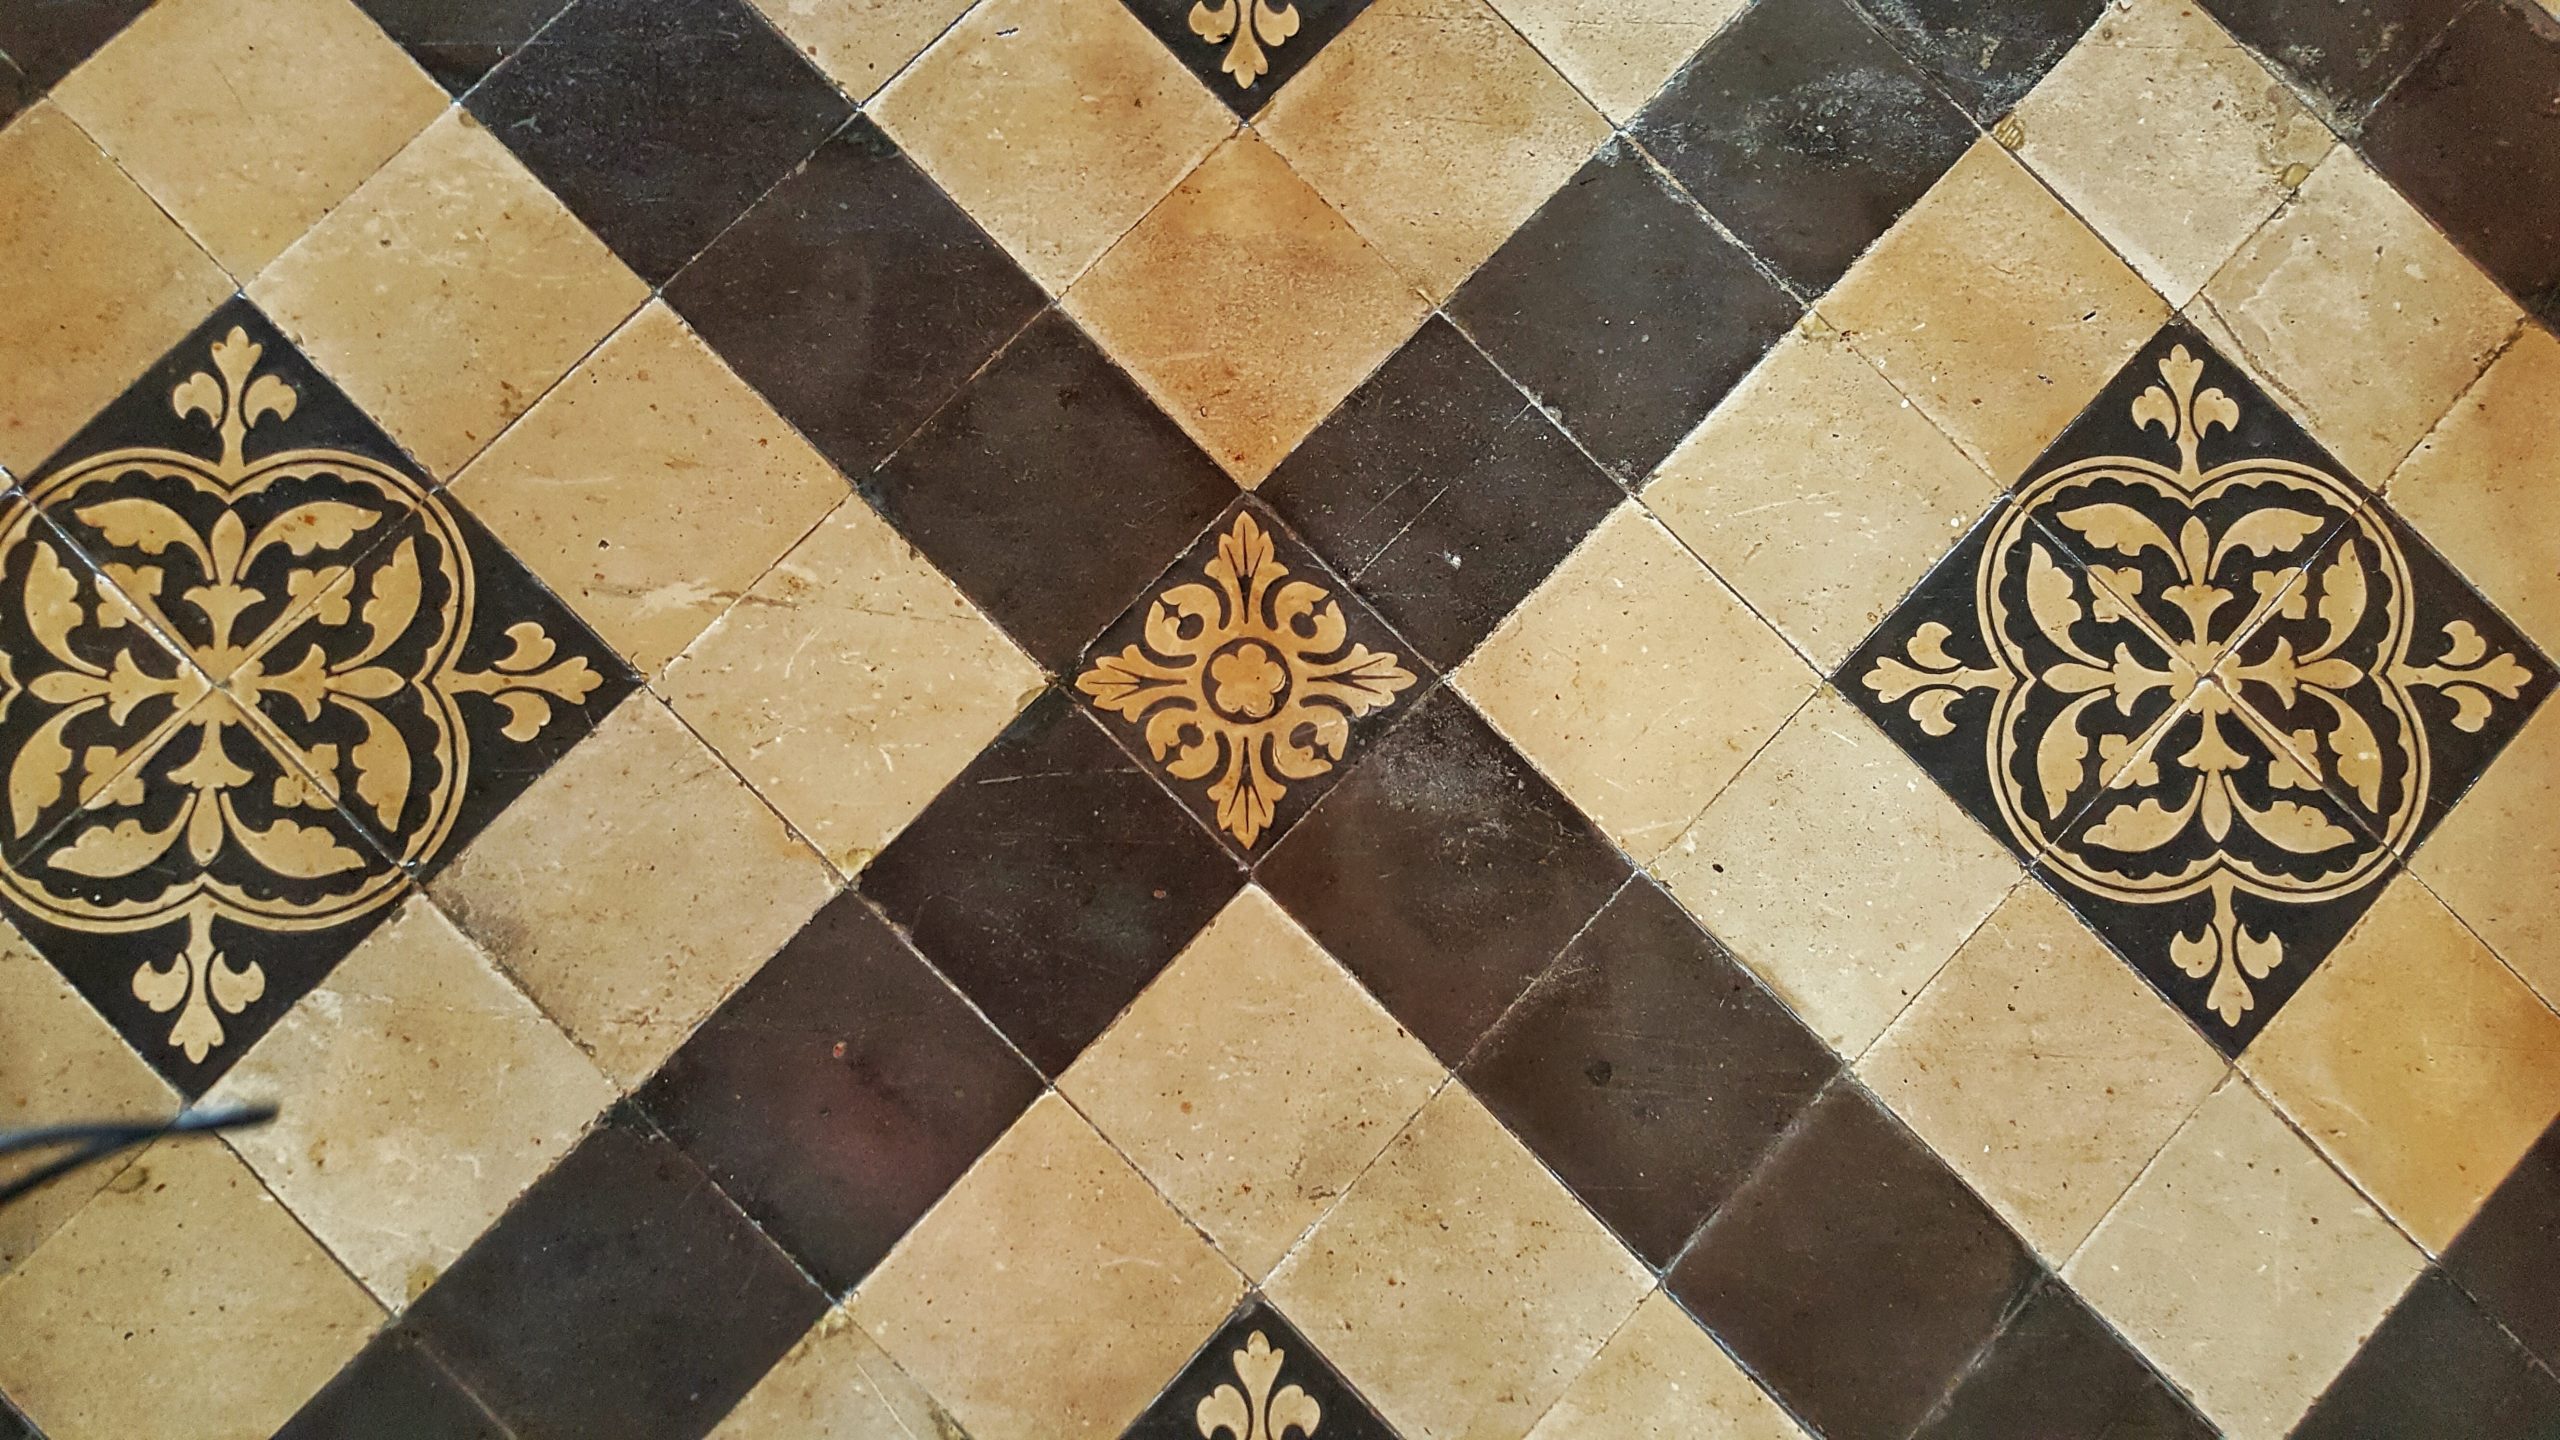 Reclaimed Patterned Encaustic Floor Tiles 6.1 m2 (65 sq ft)